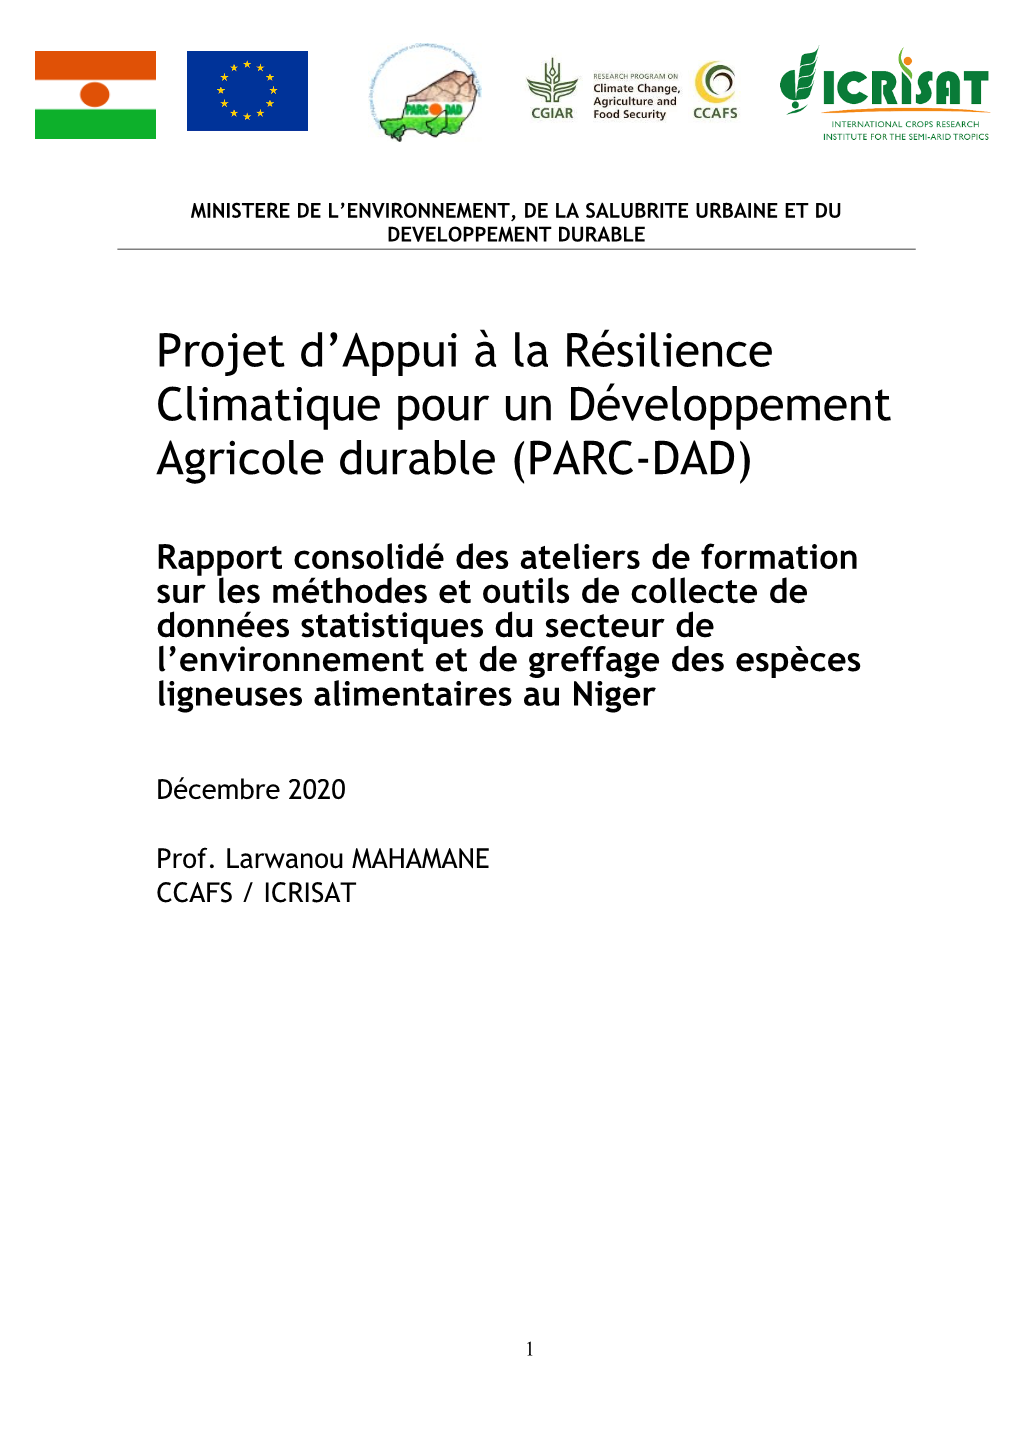 Projet D'appui À La Résilience Climatique Pour Un Développement